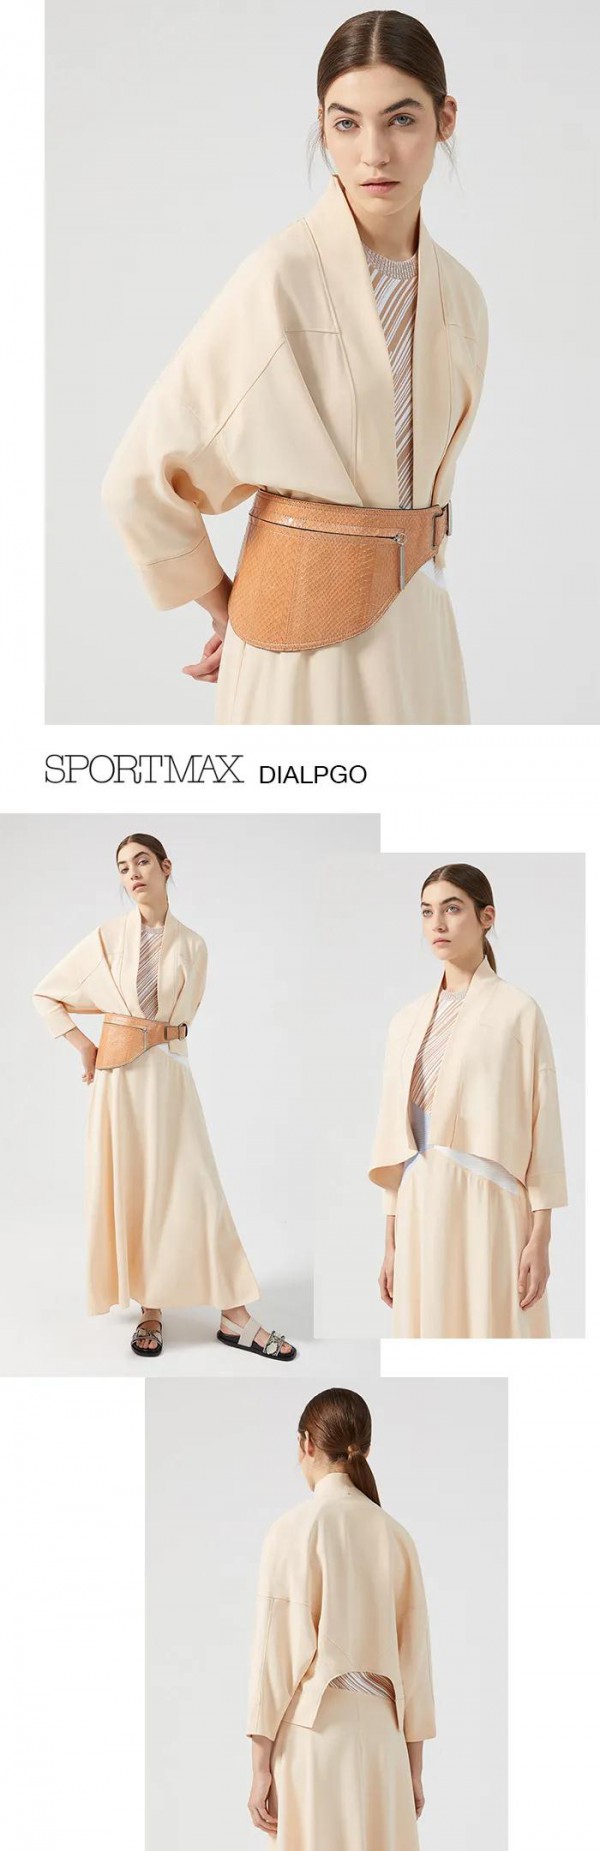 MaxMara女装品牌用艺术的手法对话服装